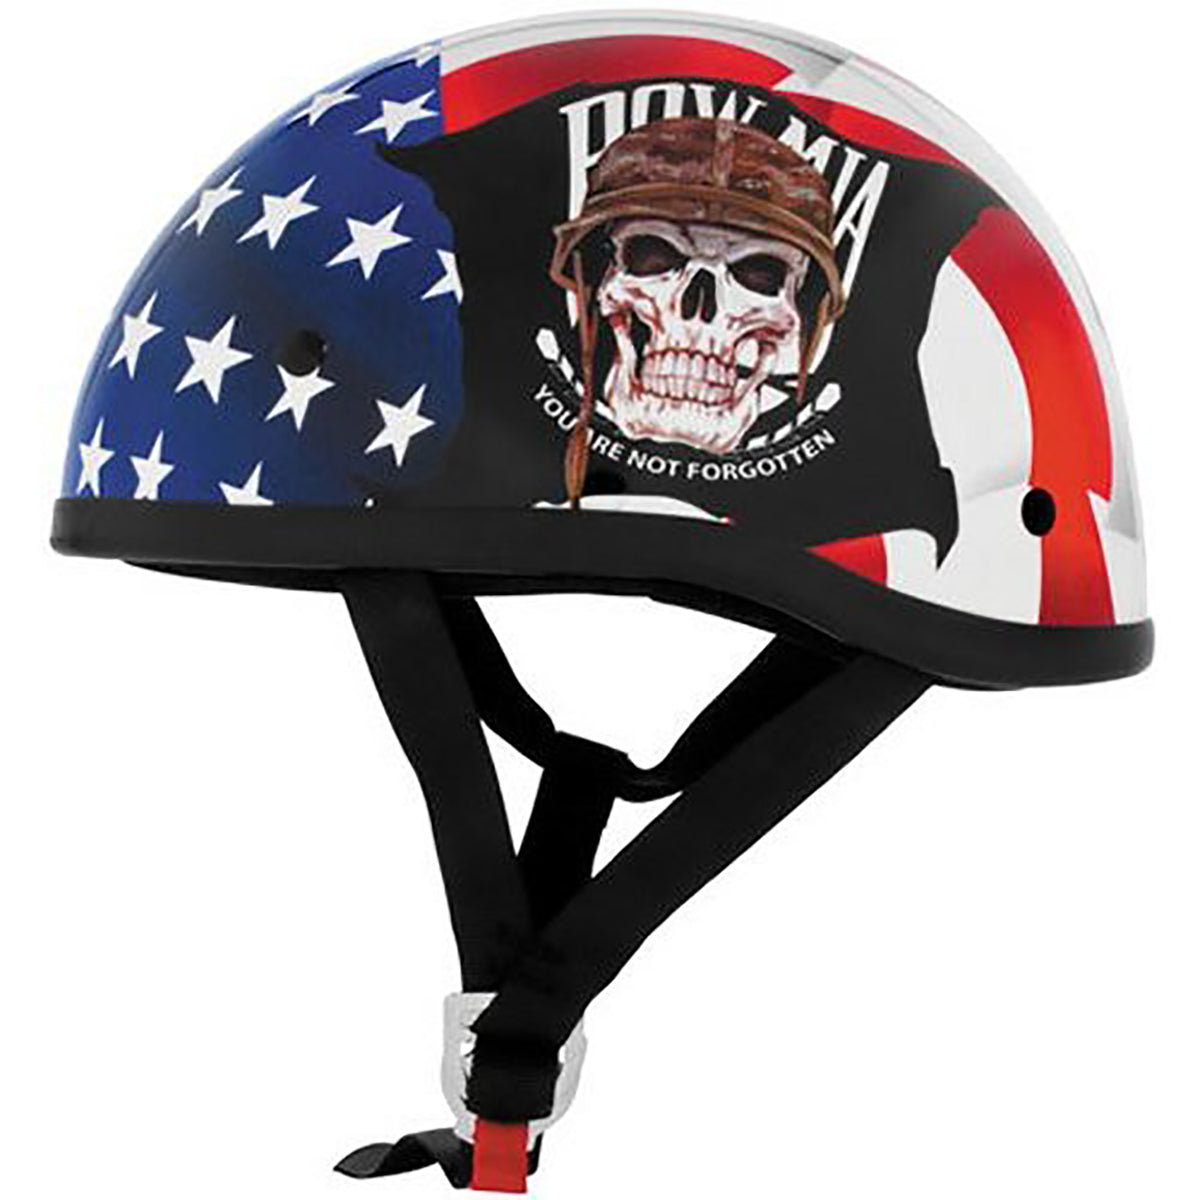 Skid Lid Original Pow-Mia Adult Cruiser Helmets-646956